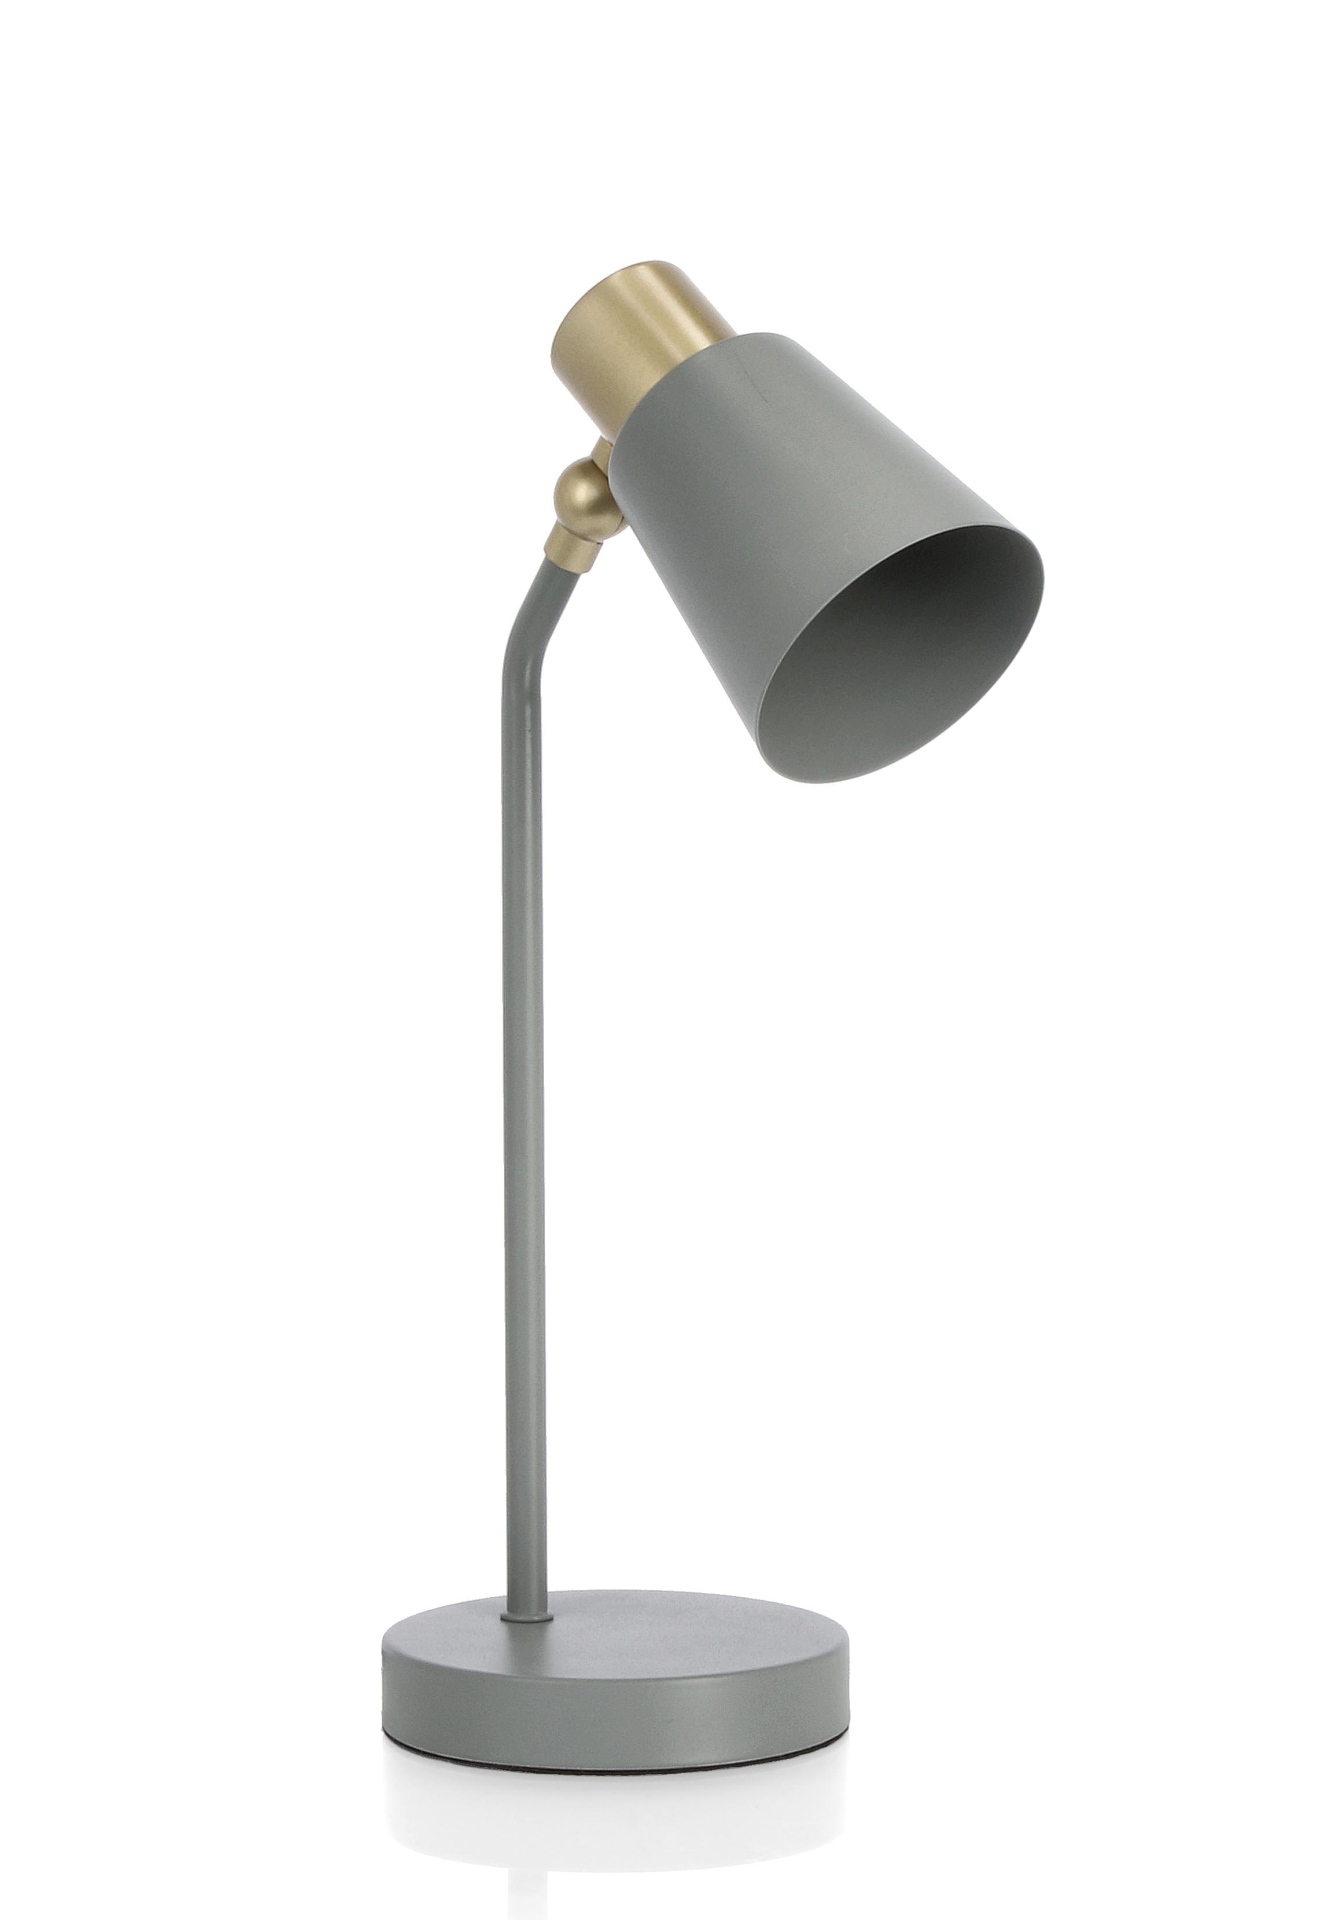 Die Stehleuchte Helsinki überzeugt mit ihrem klassischen Design. Gefertigt wurde sie aus Metall, welches einen grauen Farbton besitzt. Die Lampe besitzt Applikationen aus Kiefernholz. Die Lampe besitzt eine Höhe von 40 cm.